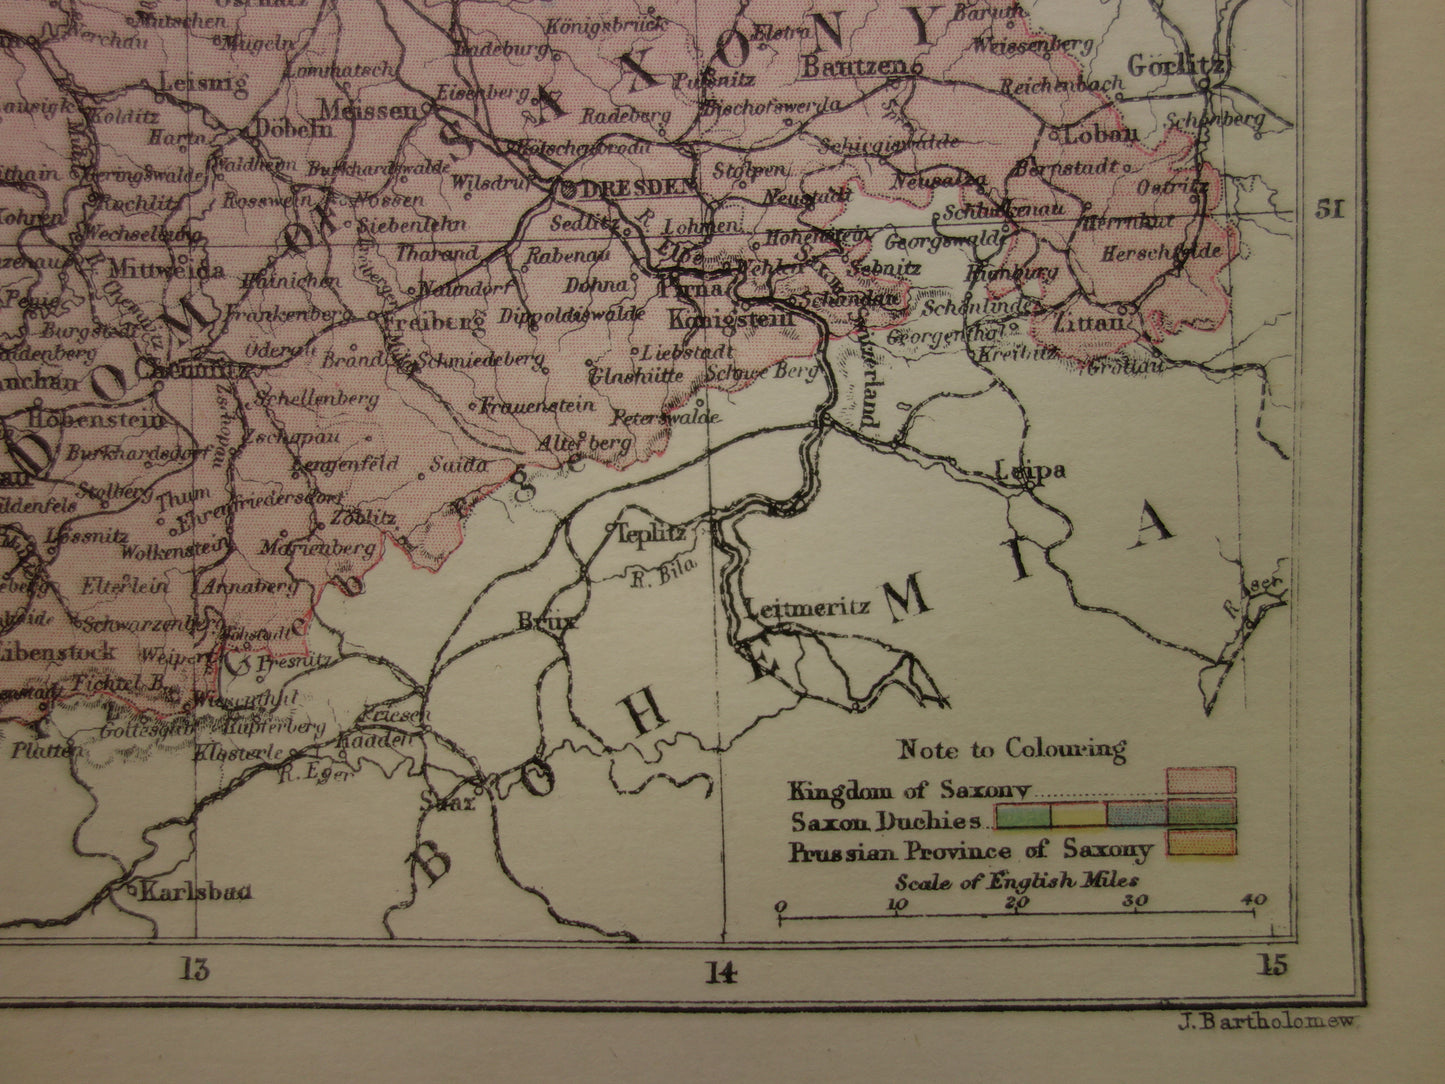 SAKSEN oude kaart van koninkrijk Saksen Duitsland 1886 originele antieke Engelse landkaart Dresden Halle Leipzig